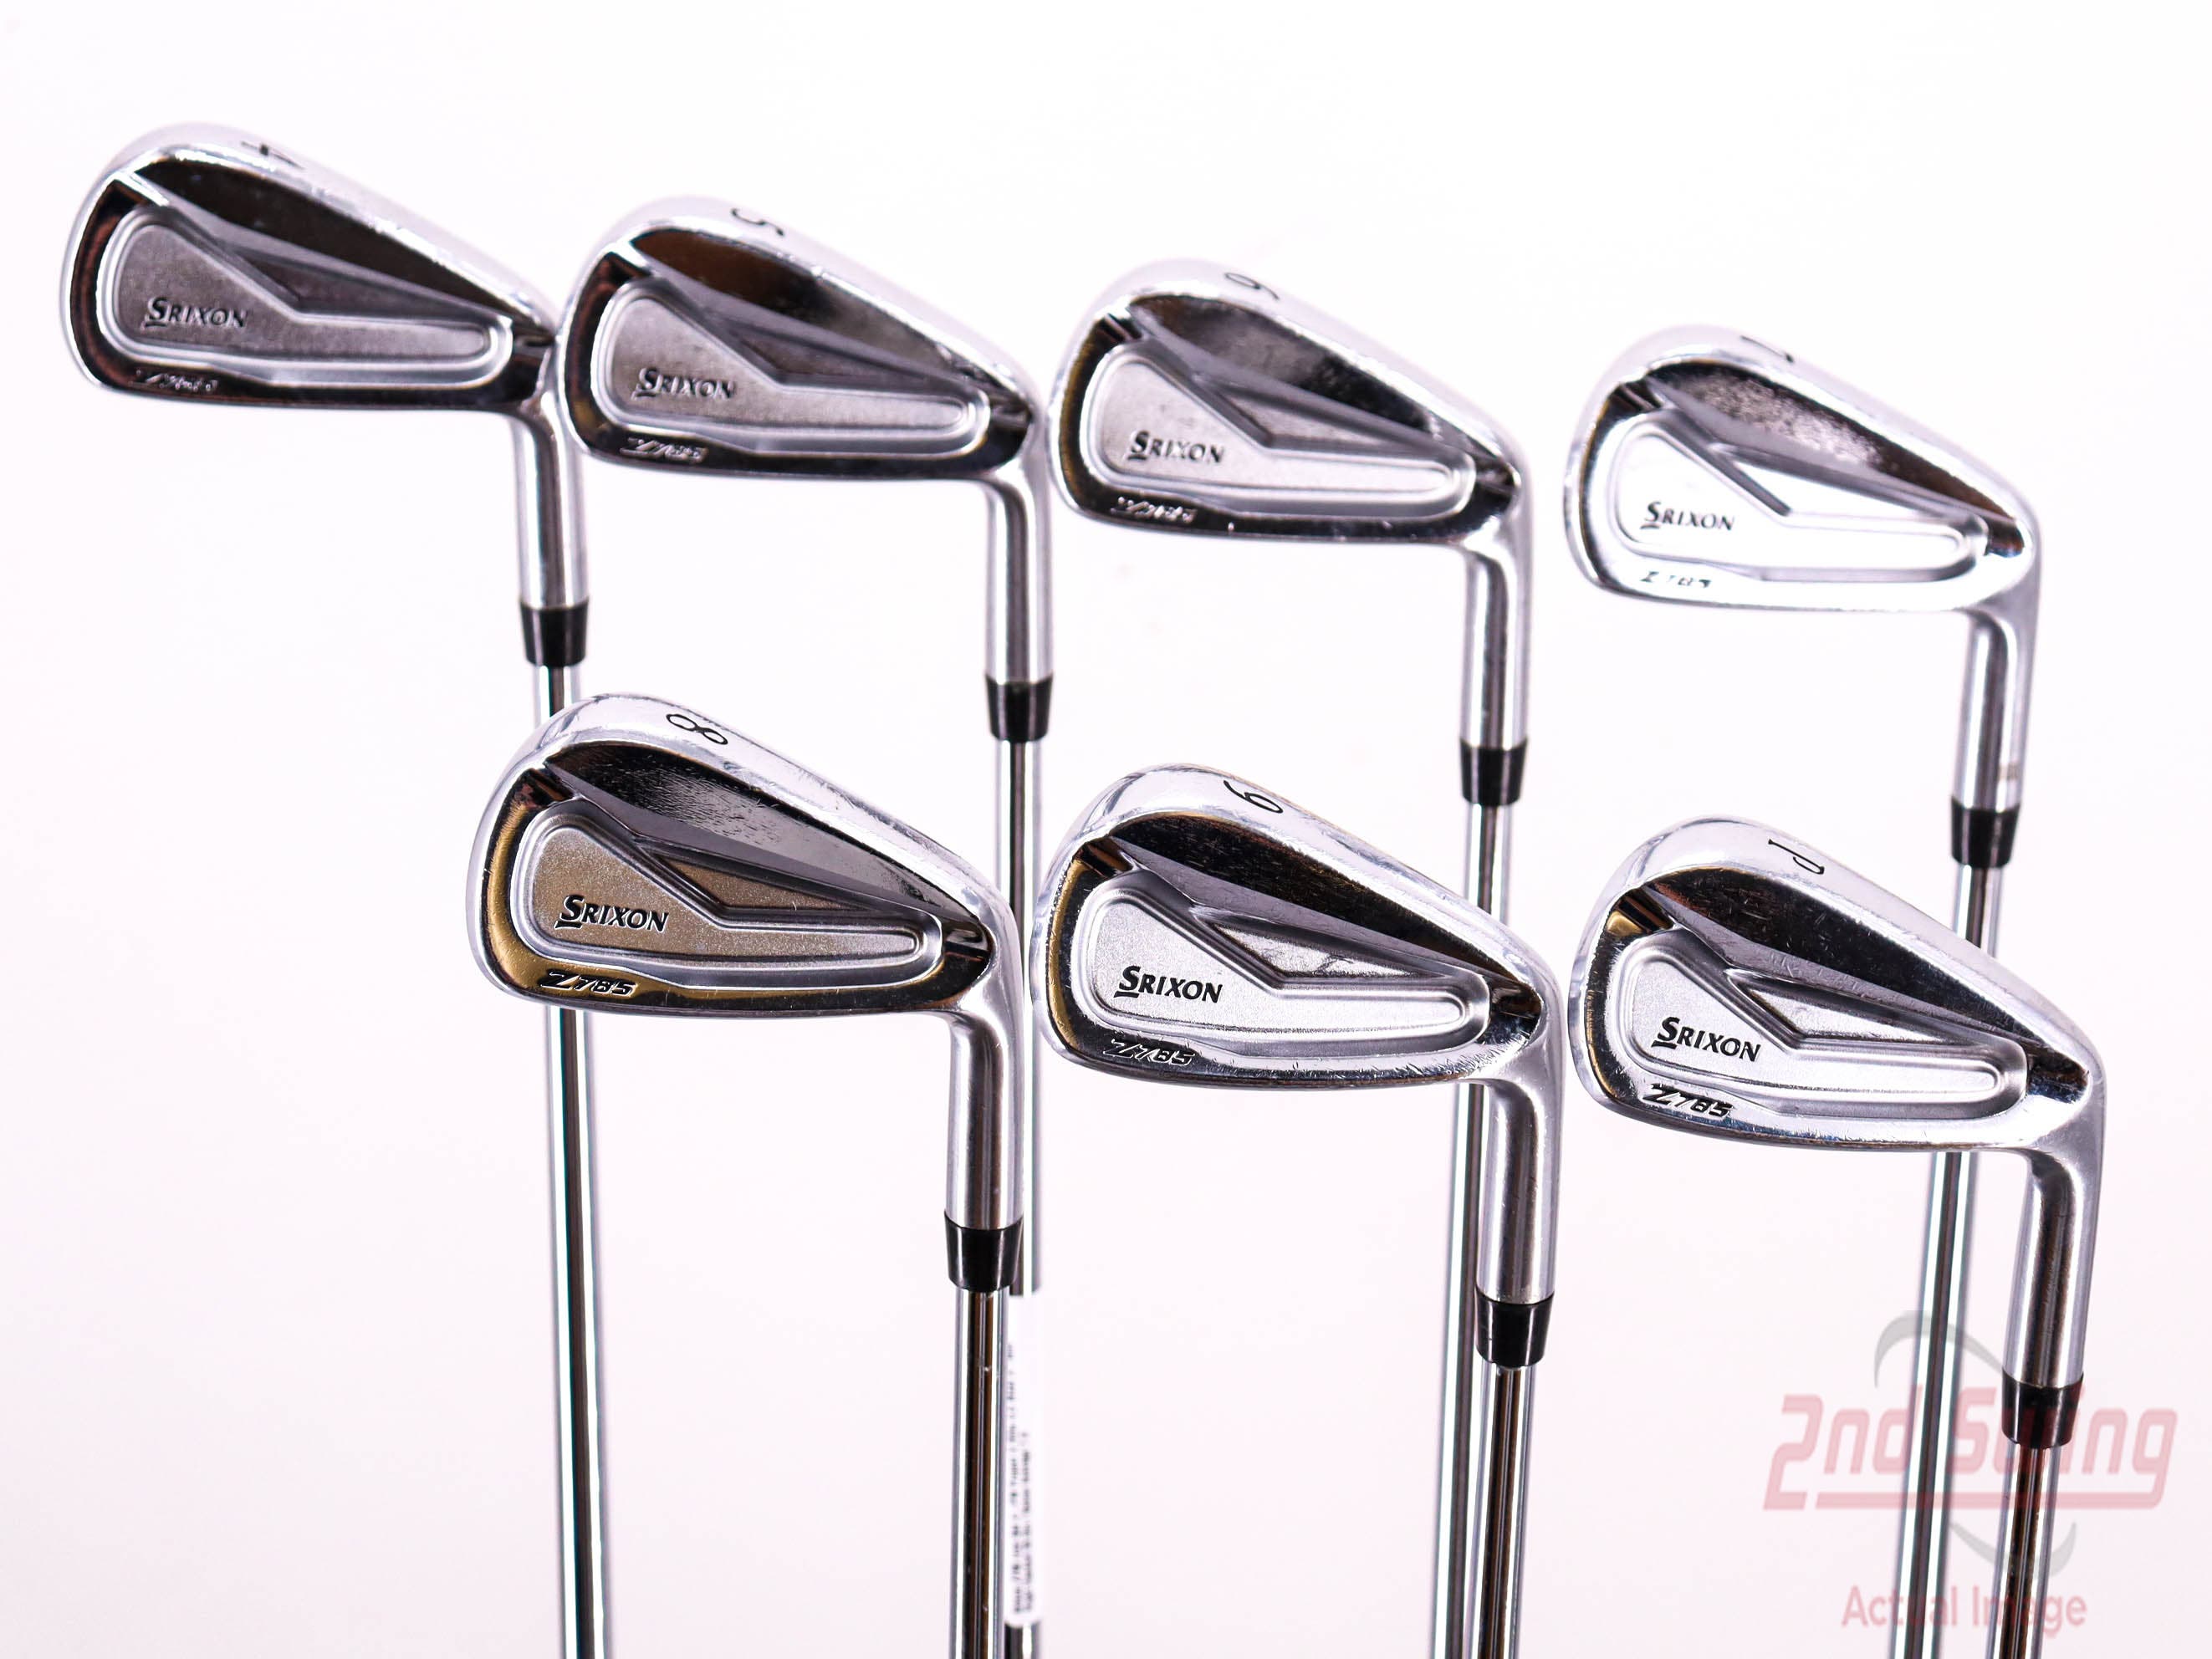 Srixon Z785 Iron Set | 2nd Swing Golf